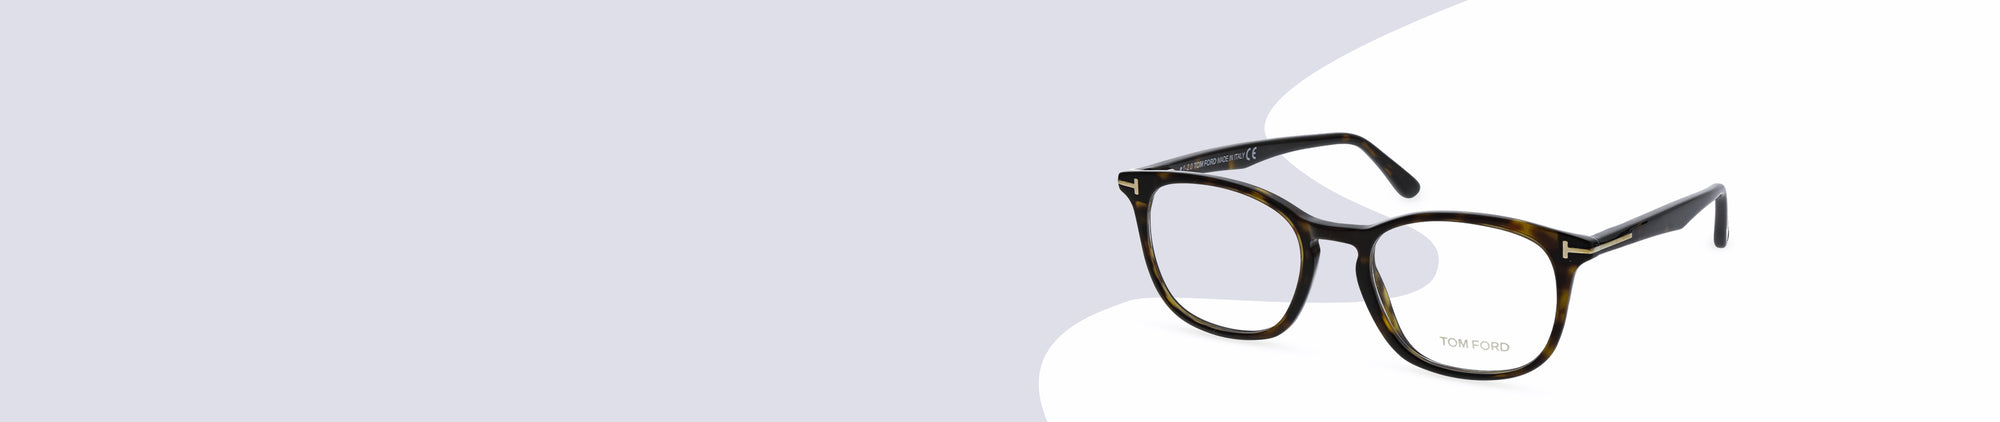 Frame Material: Plastic Glasses